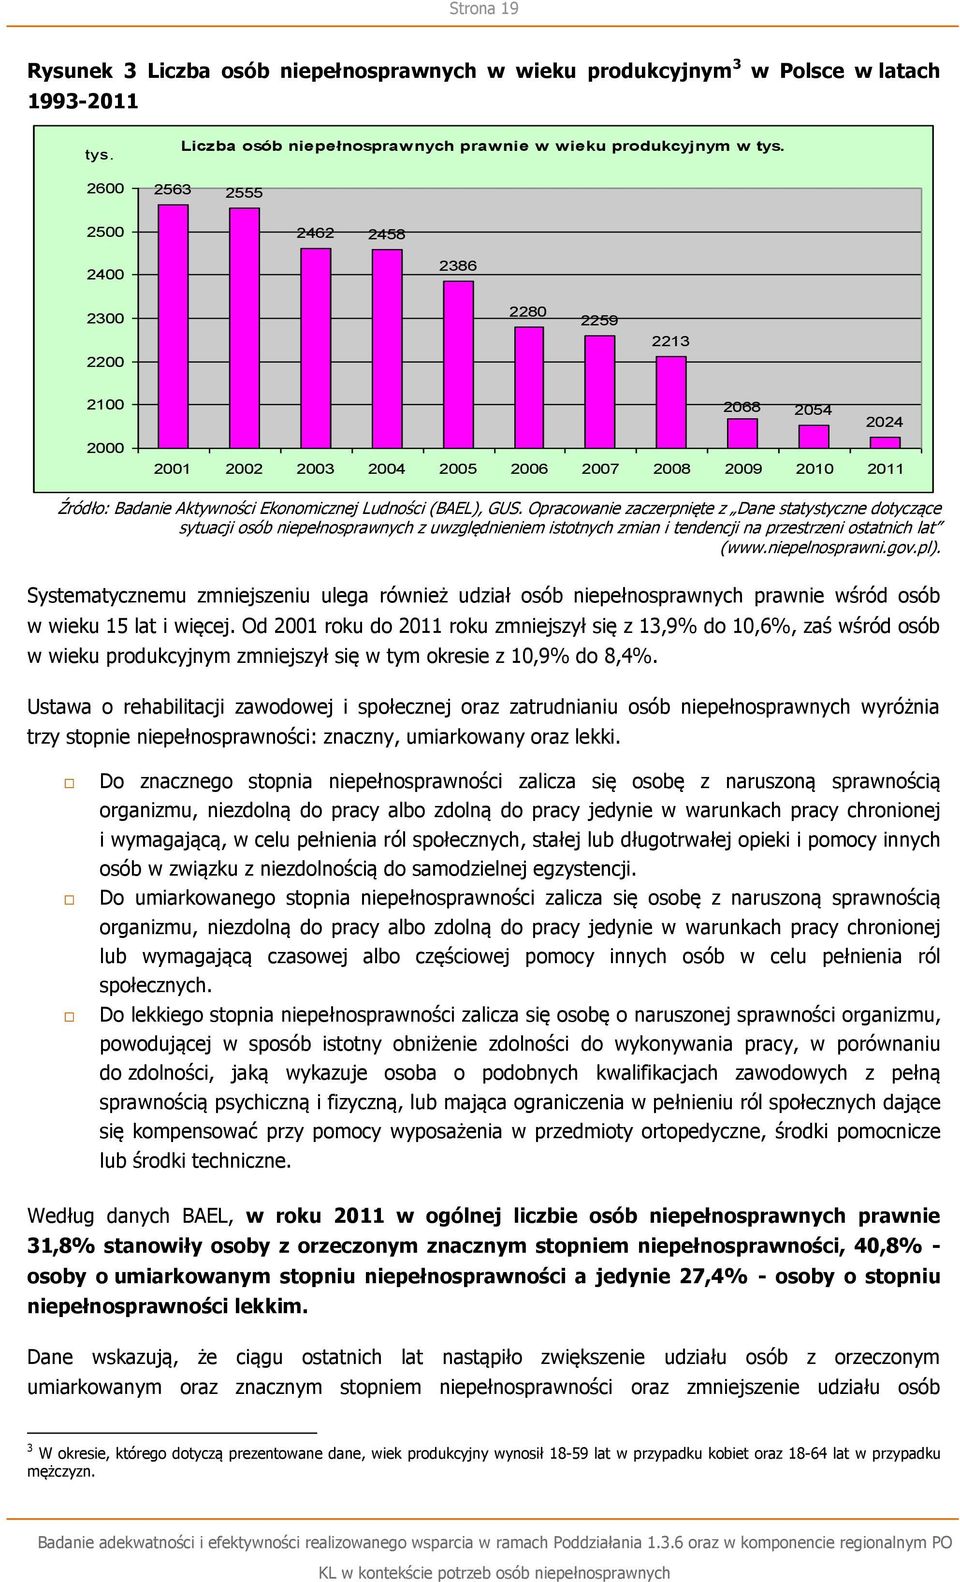 Opracowanie zaczerpnięte z Dane statystyczne dotyczące sytuacji osób niepełnosprawnych z uwzględnieniem istotnych zmian i tendencji na przestrzeni ostatnich lat (www.niepelnosprawni.gov.pl).